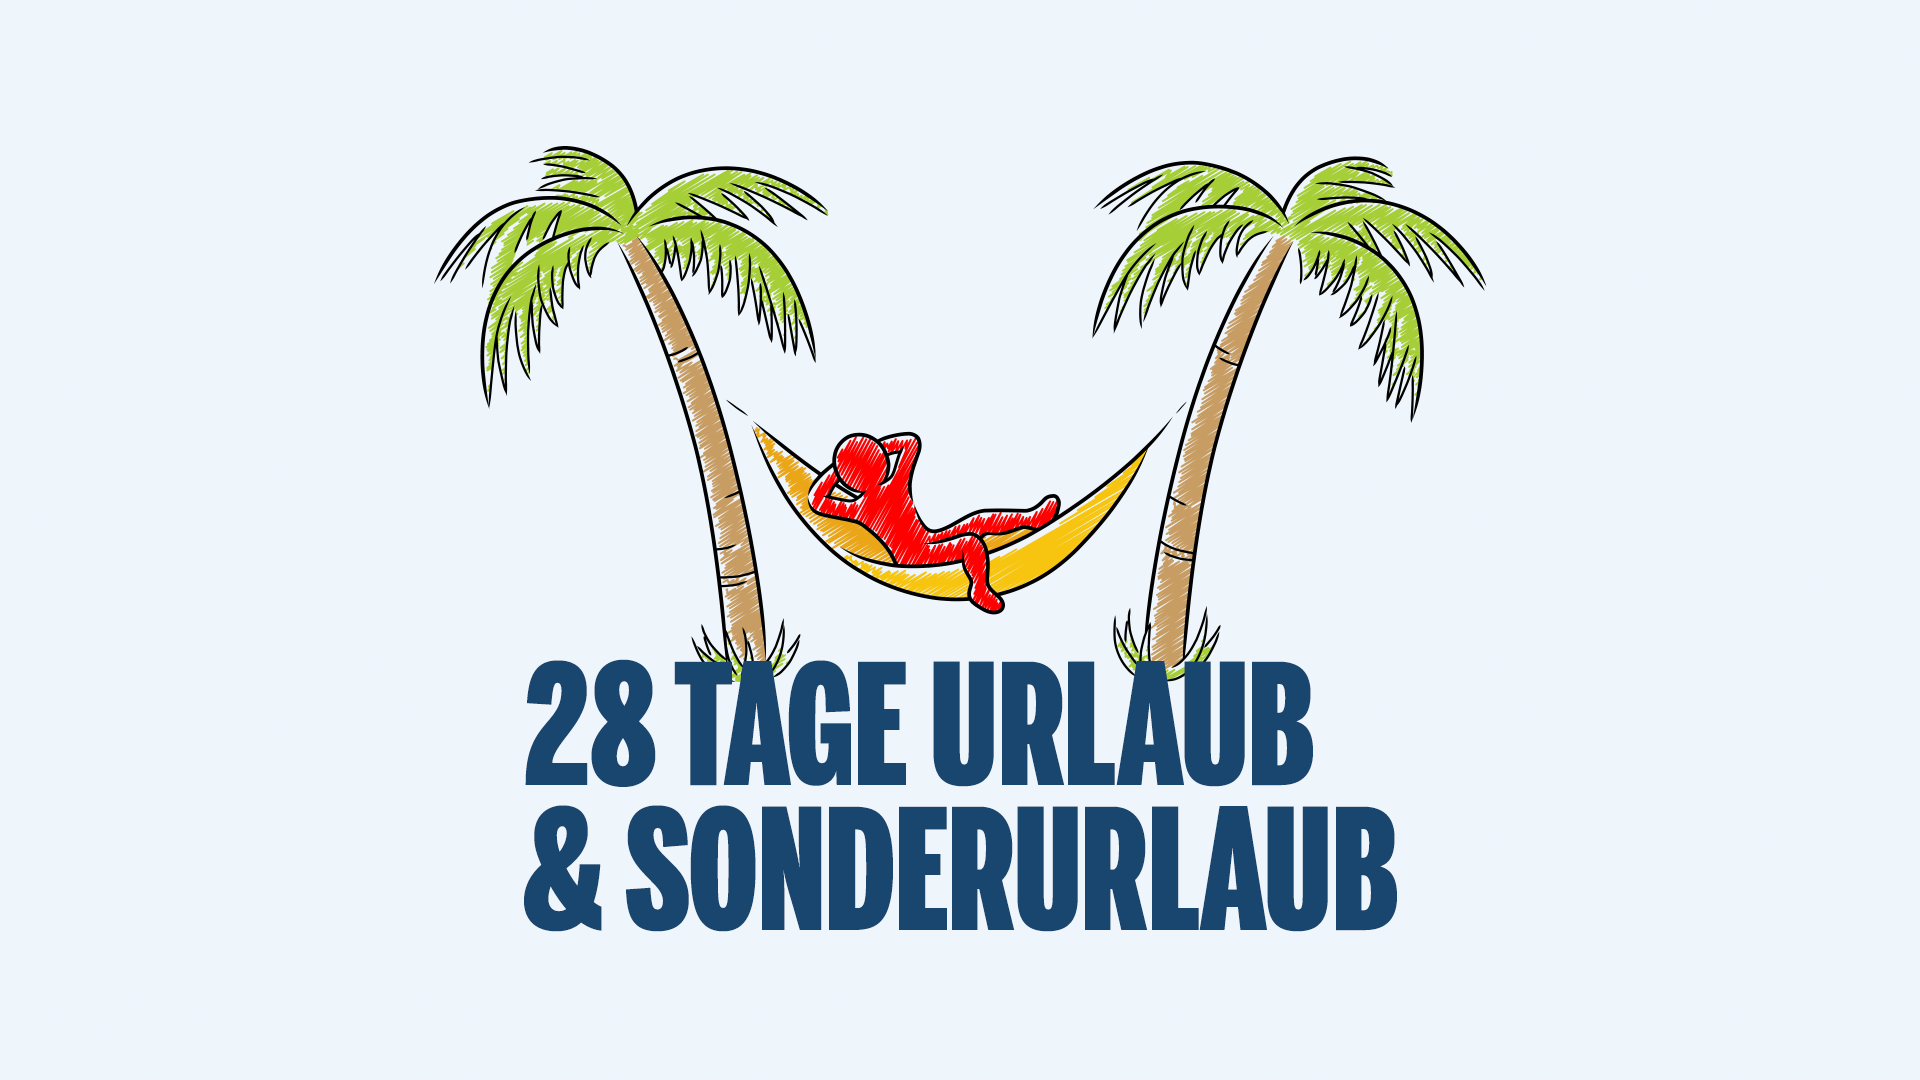 Neben dem vertraglich vereinbarten Urlaub von 28 Tagen sind die jeweils halben Arbeitstage am 24.12. und 31.12. sowie am Standort Köln der Rosenmontag arbeitsfrei.